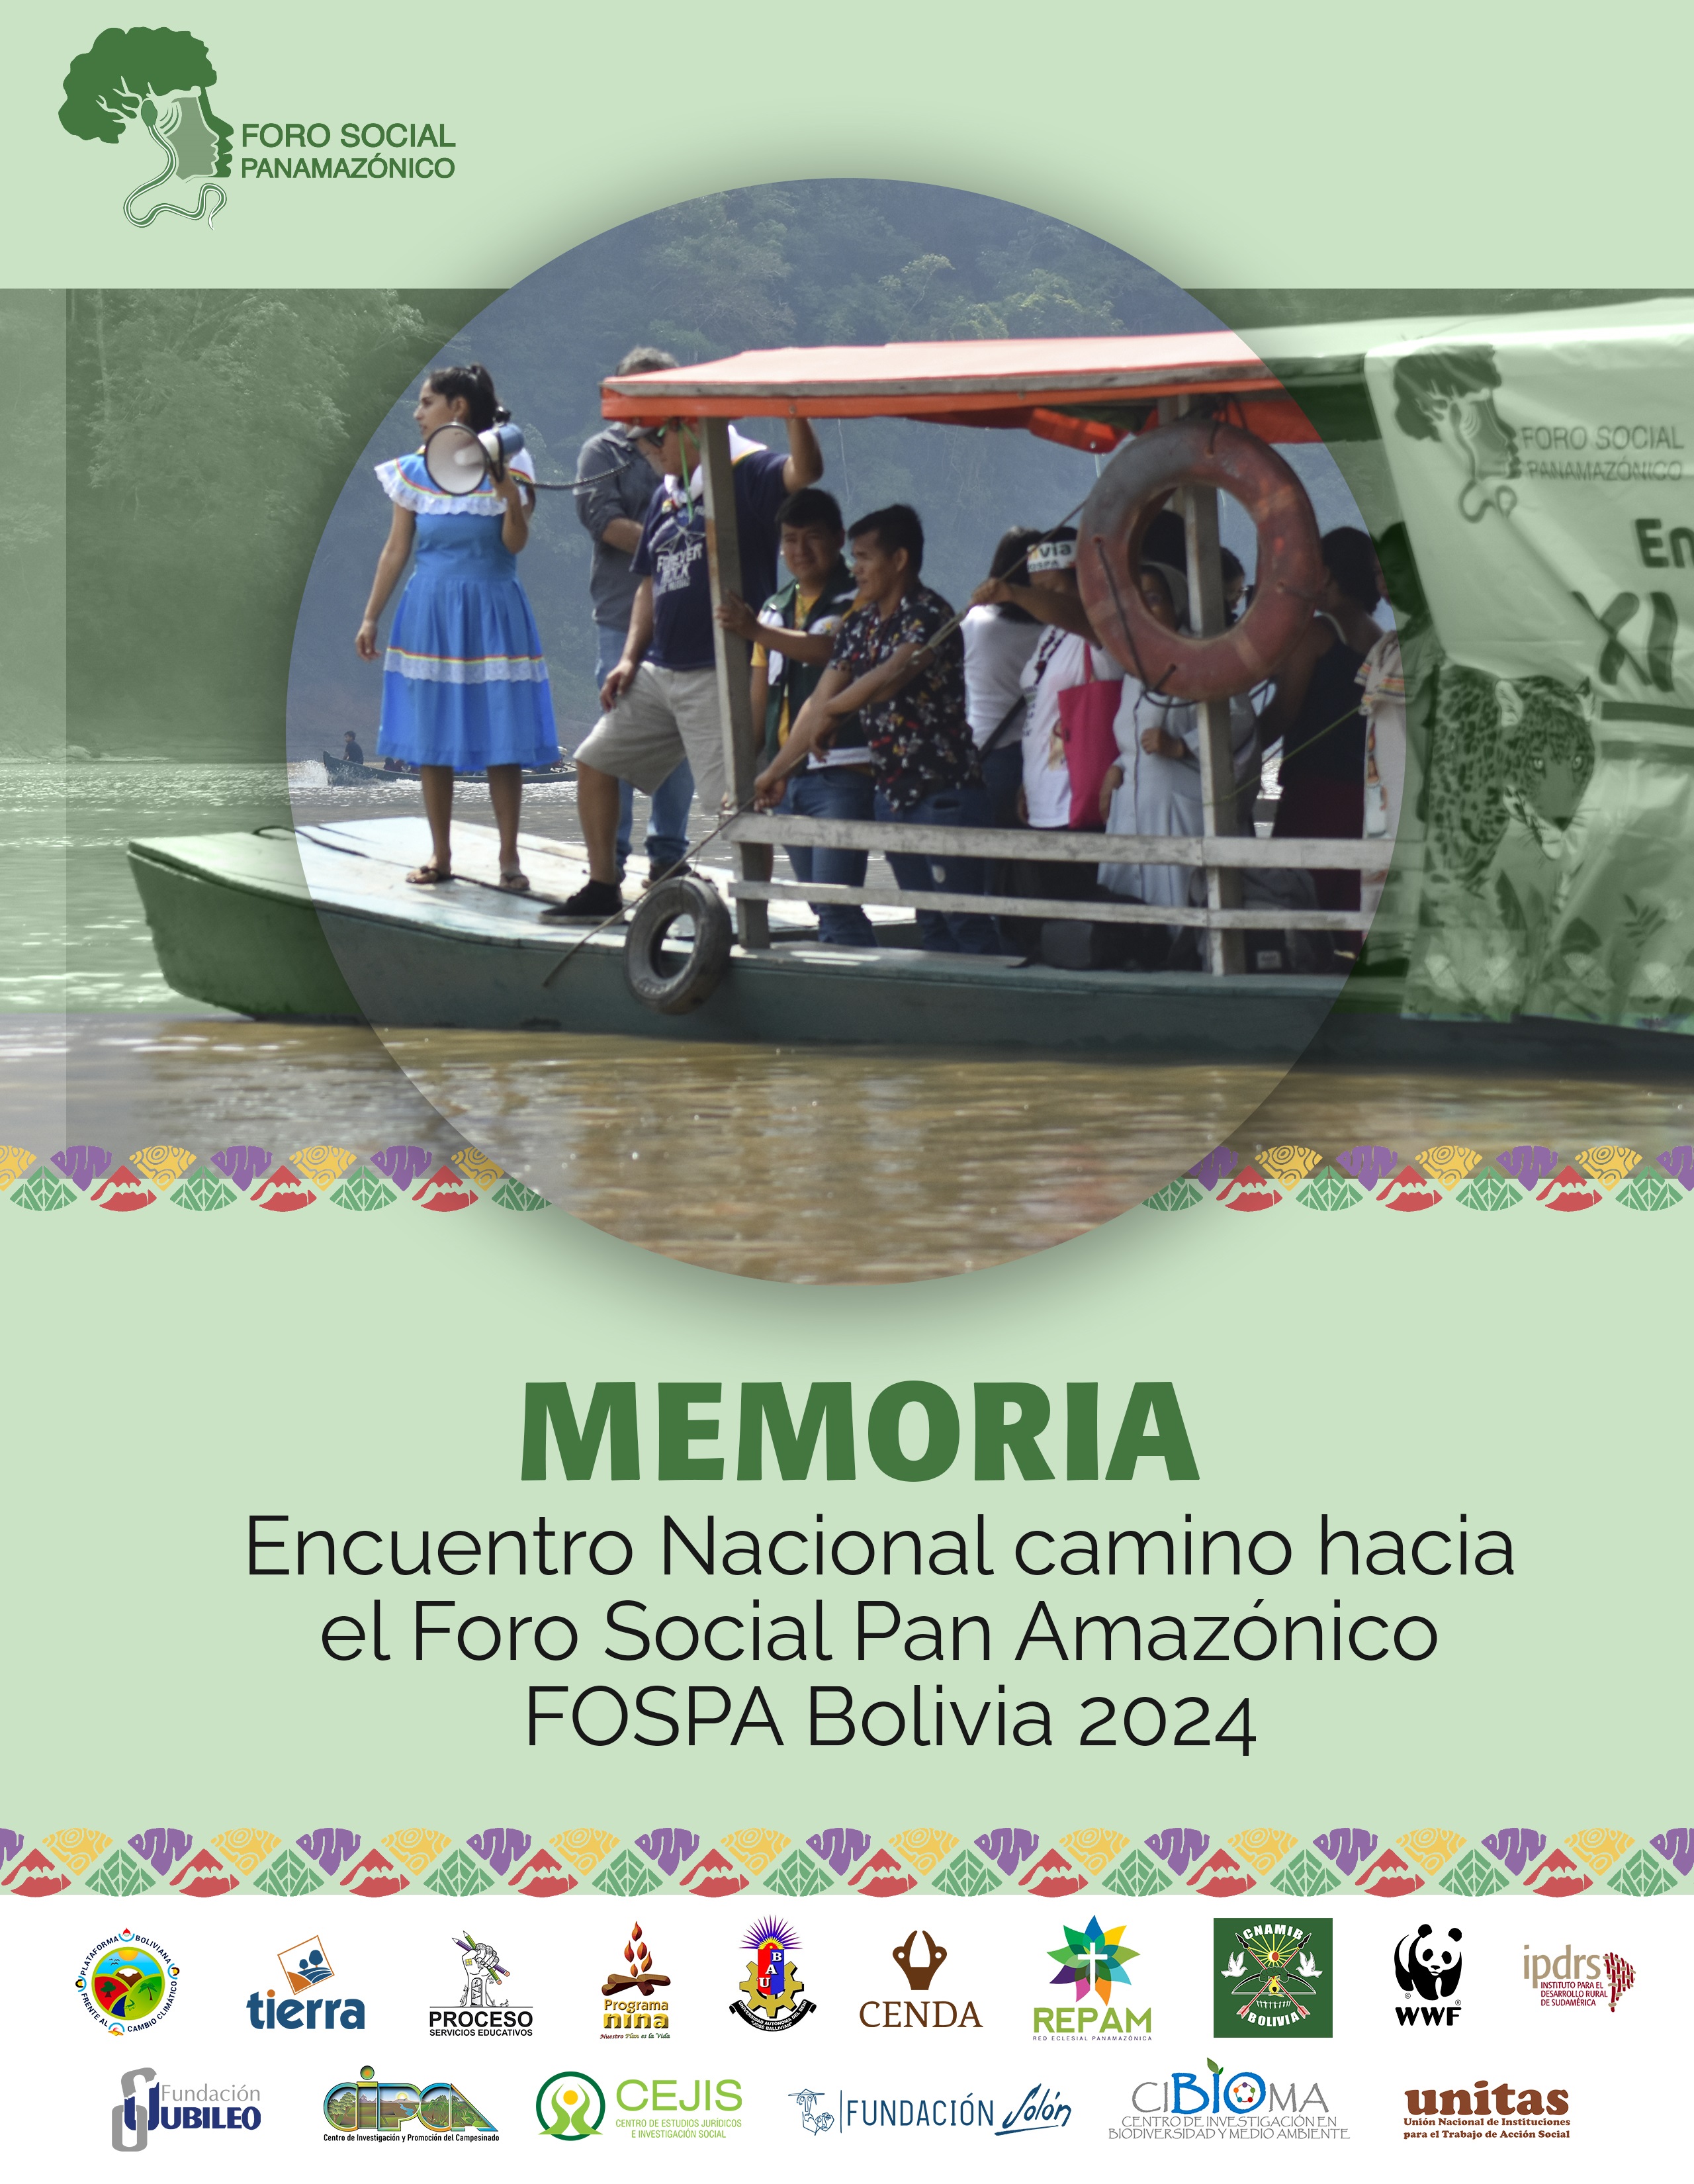 Memoria: Encuentro Nacional camino hacia el Foro Social Pan Amazónico – FOSPA Bolivia 2024